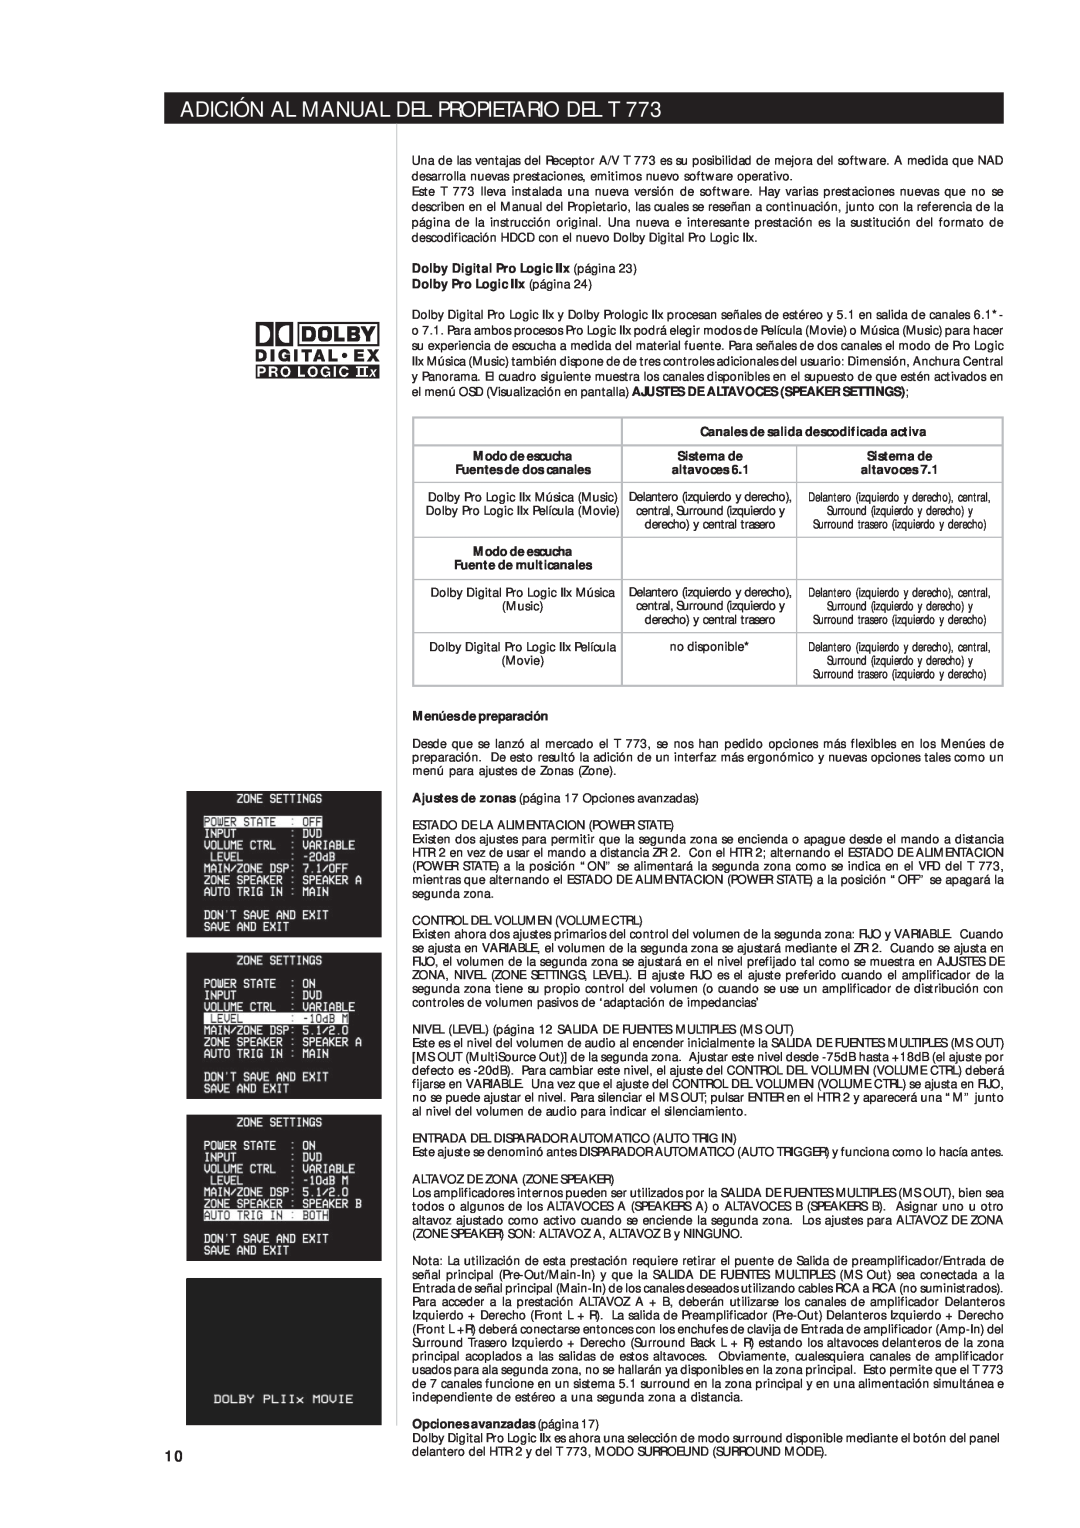 NAD T 773 Adición Al Manual Del Propietario Del T, Dolby Digital Pro Logic IIx página, Dolby Pro Logic IIx página 